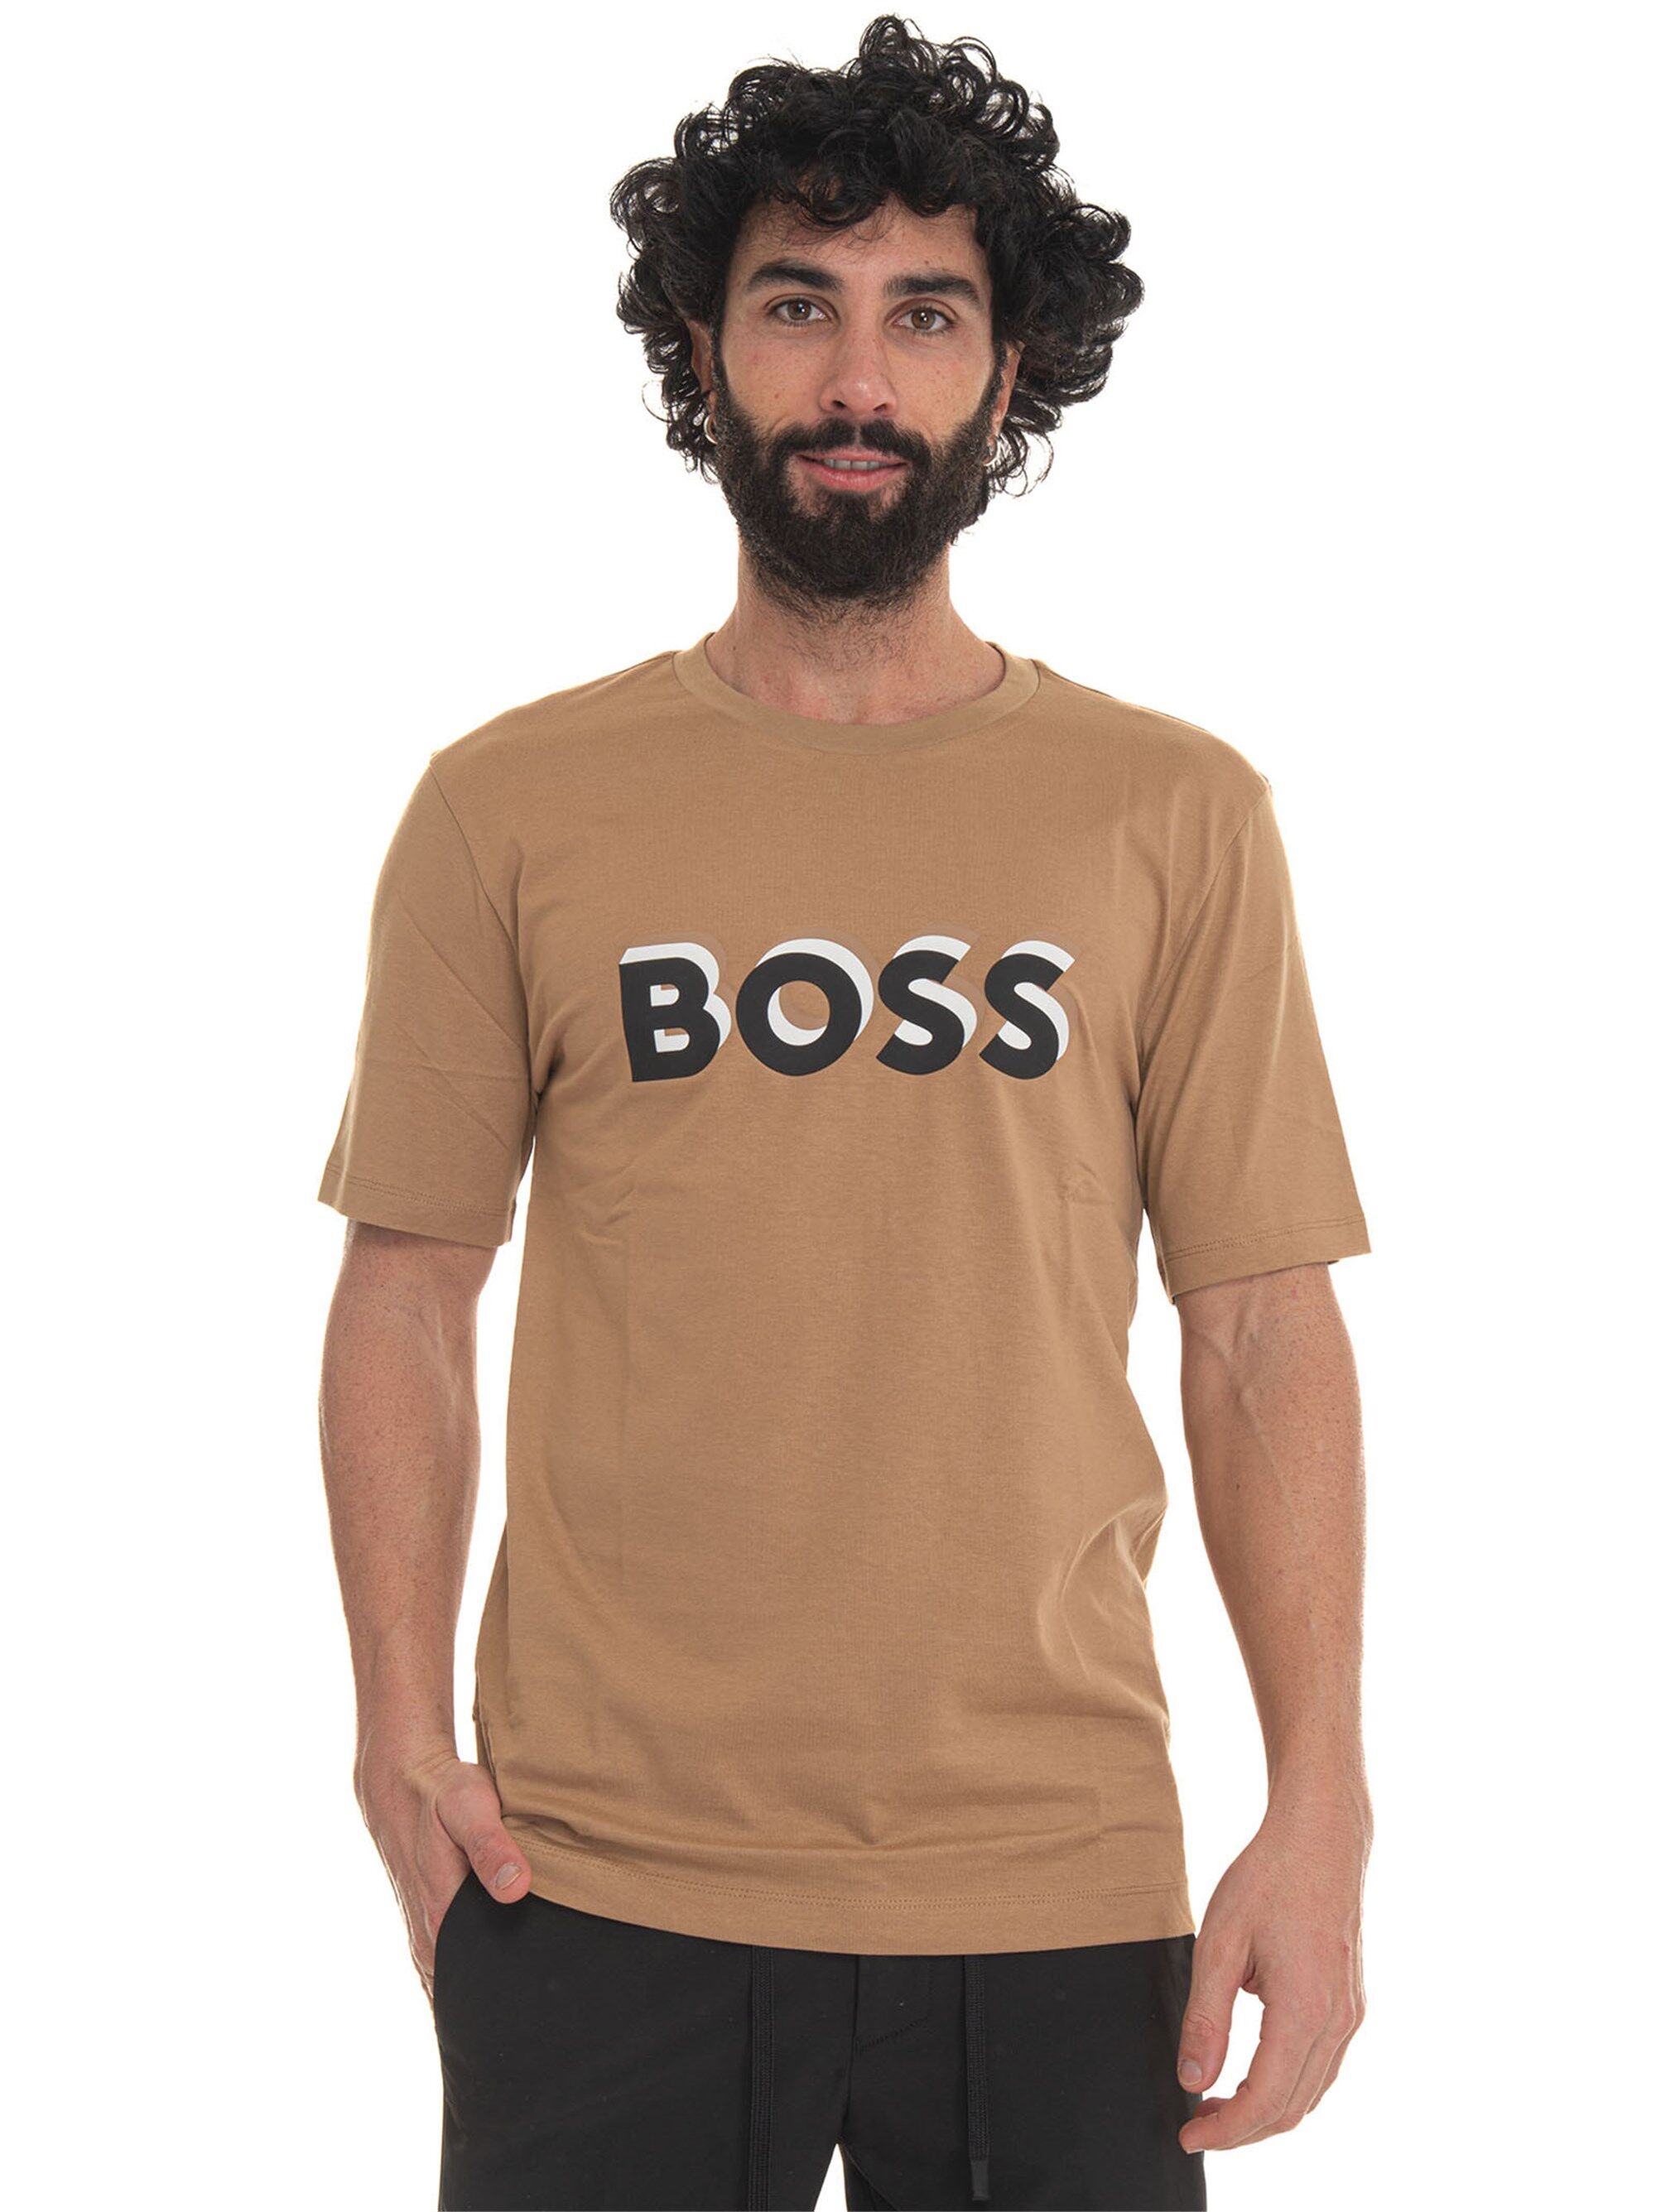 Boss T-shirt girocollo mezza manica Beige Uomo S